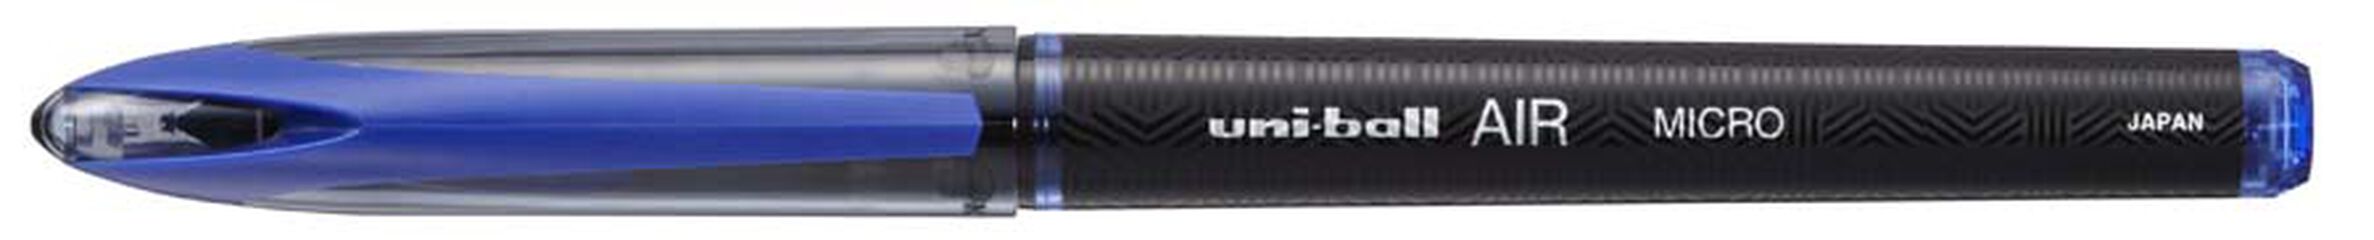 Roller Uniball Air Micro UBA-188M blau